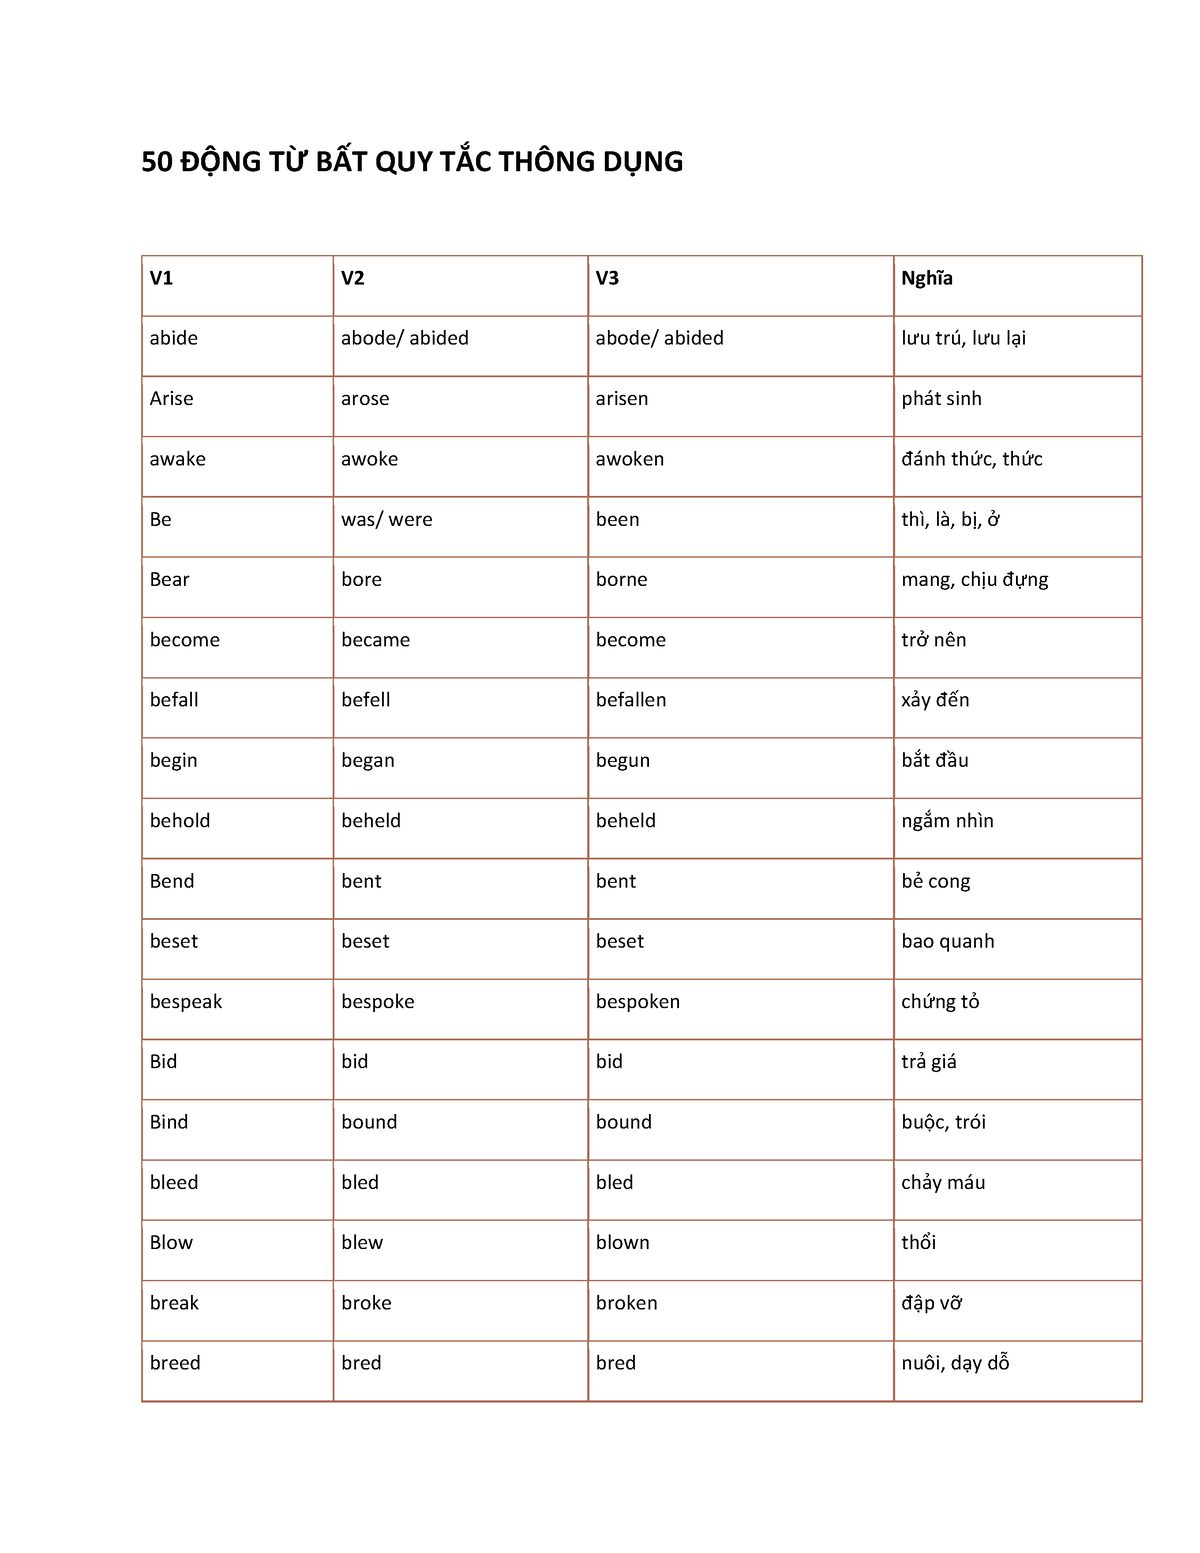 Tìm hiểu 50 từ bất quy tắc thông dụng trong tiếng Anh